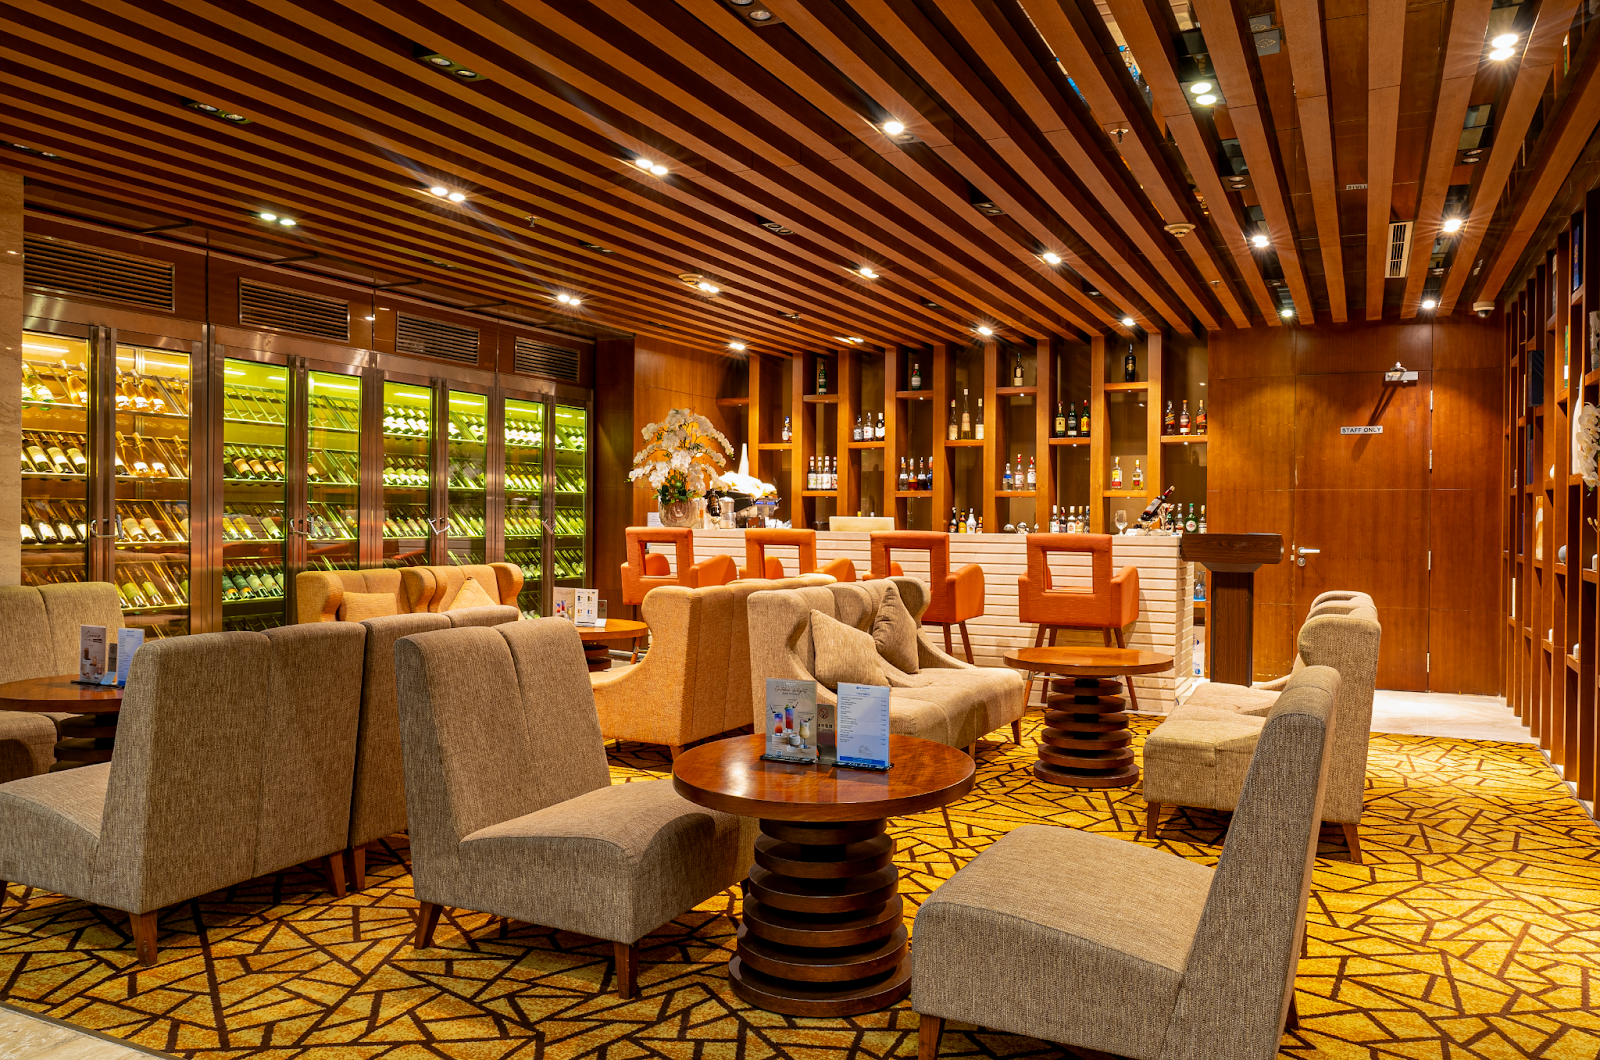 Du lịch Hạ Long cuối năm tại khách sạn 5 sao Wyndham Legend Ha Long - Wyndham Legend Ha Long - lựa chọn lý tưởng cho kỳ nghỉ cuối năm - Khu vực Bar sang trọng